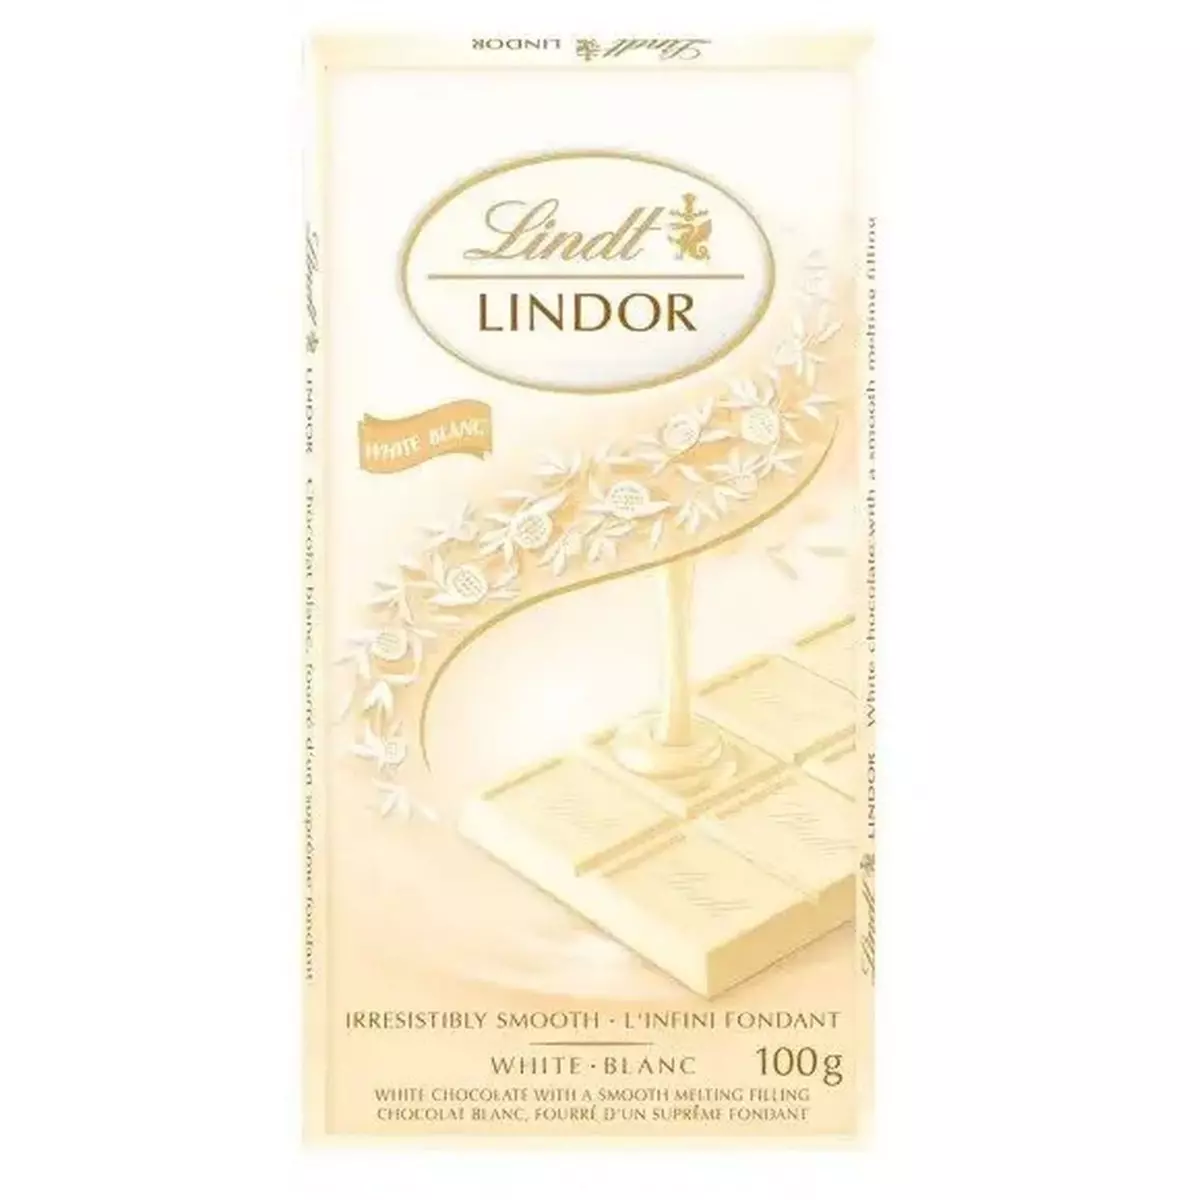 LINDT Lindor tablette de chocolat blanc 1 pièce 100g